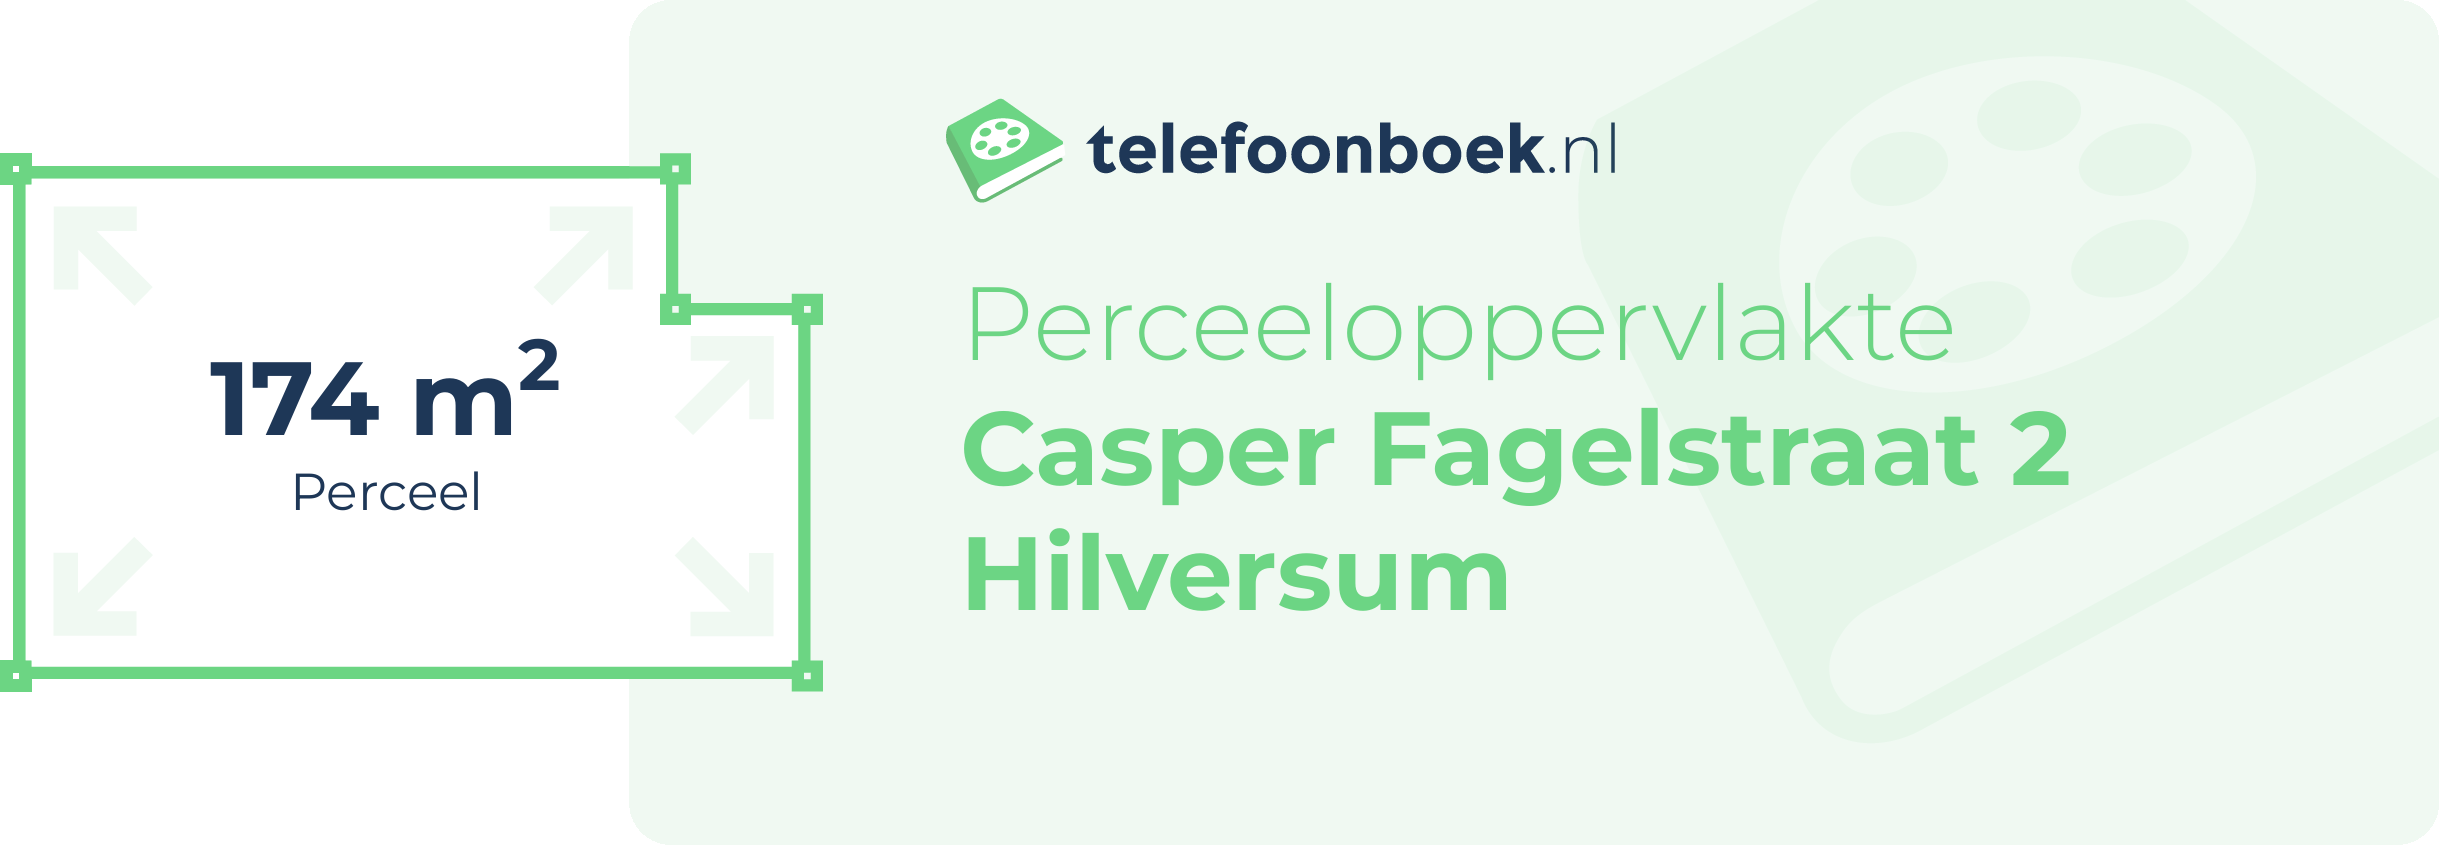 Perceeloppervlakte Casper Fagelstraat 2 Hilversum